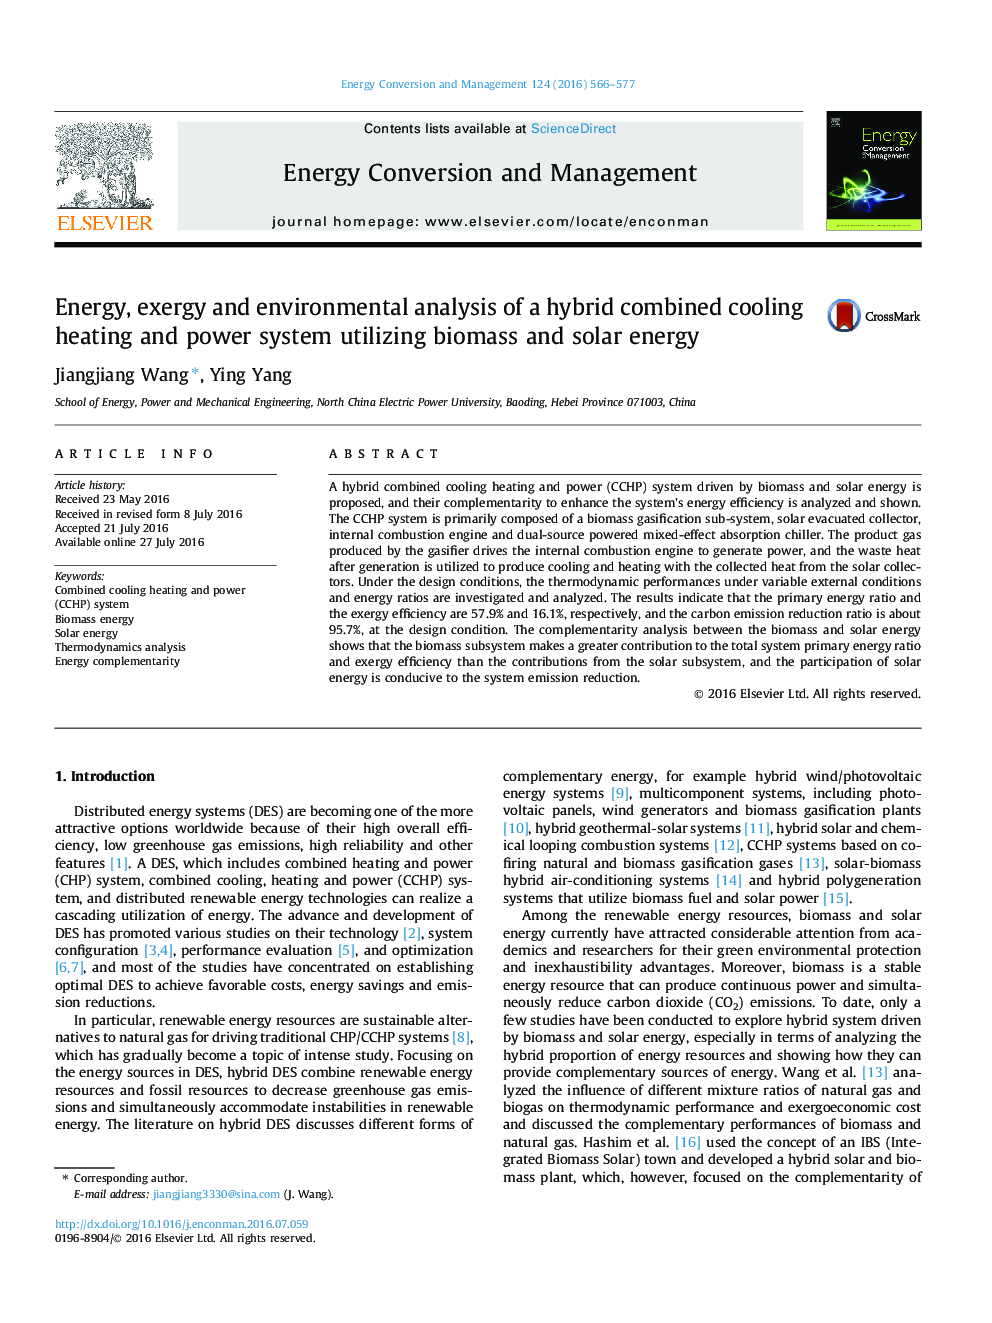 انرژی، اگزرژی و تجزیه و تحلیل محیطی از یک سیستم خنک کننده و سیستم قدرت ترکیبی با استفاده از زیست توده و انرژی خورشیدی